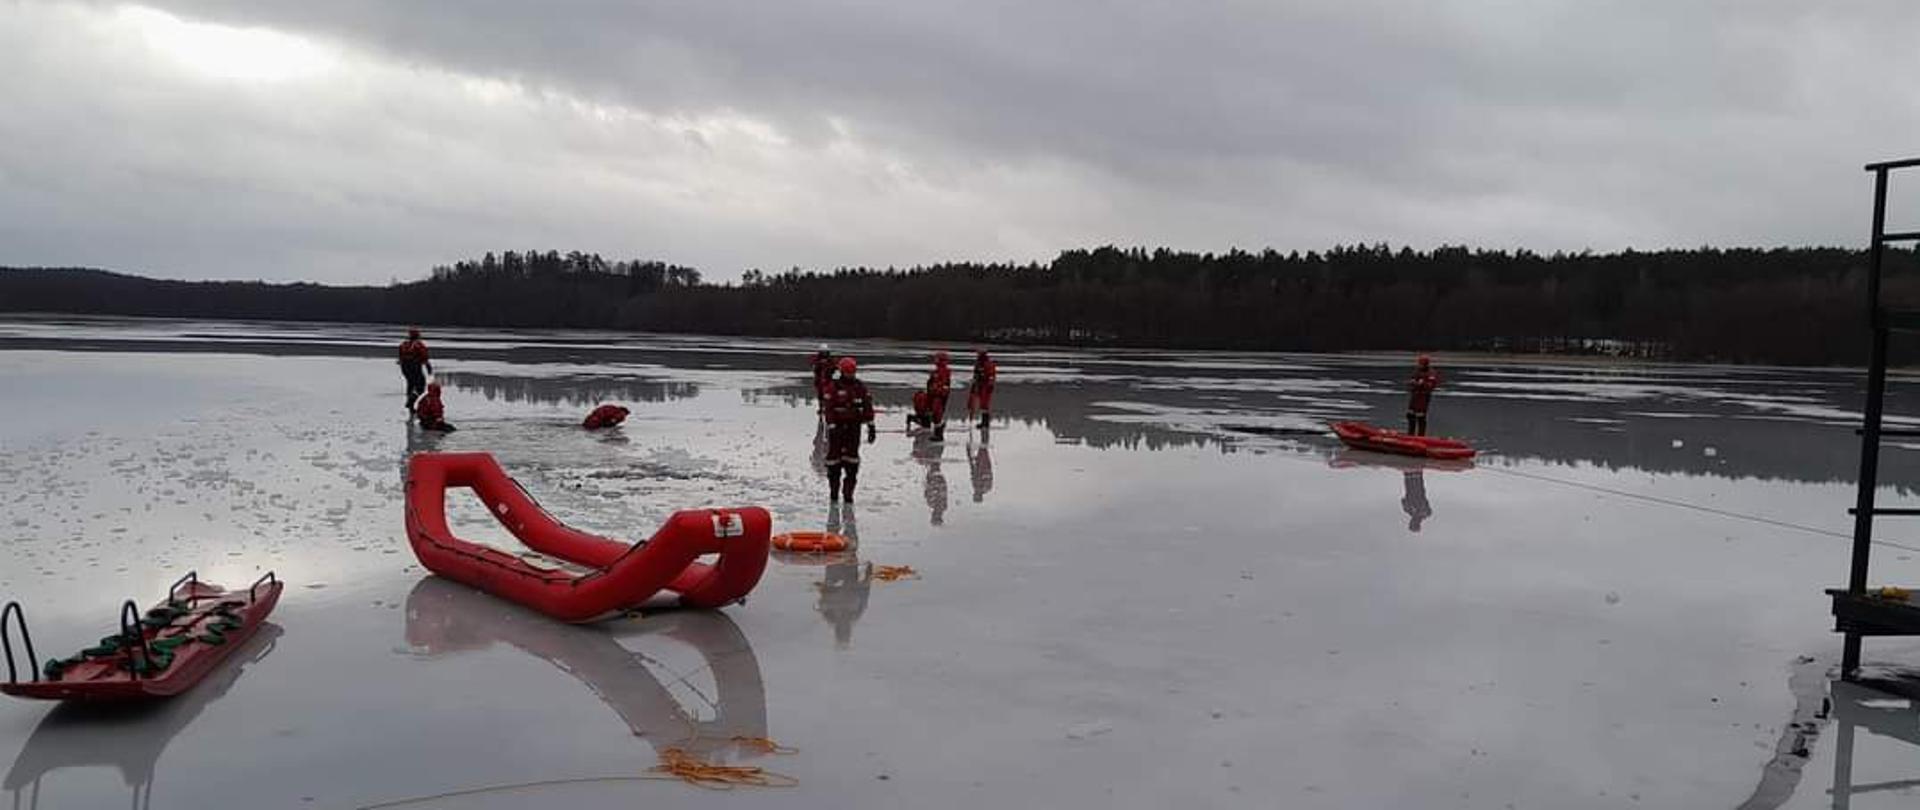 Strażacy w specjalistycznym umundurowaniu stoją na zamarzniętym jeziorze niedaleko jest specjalistyczny sprzęt sanie lodowe oraz pompowane sanie lodowe.